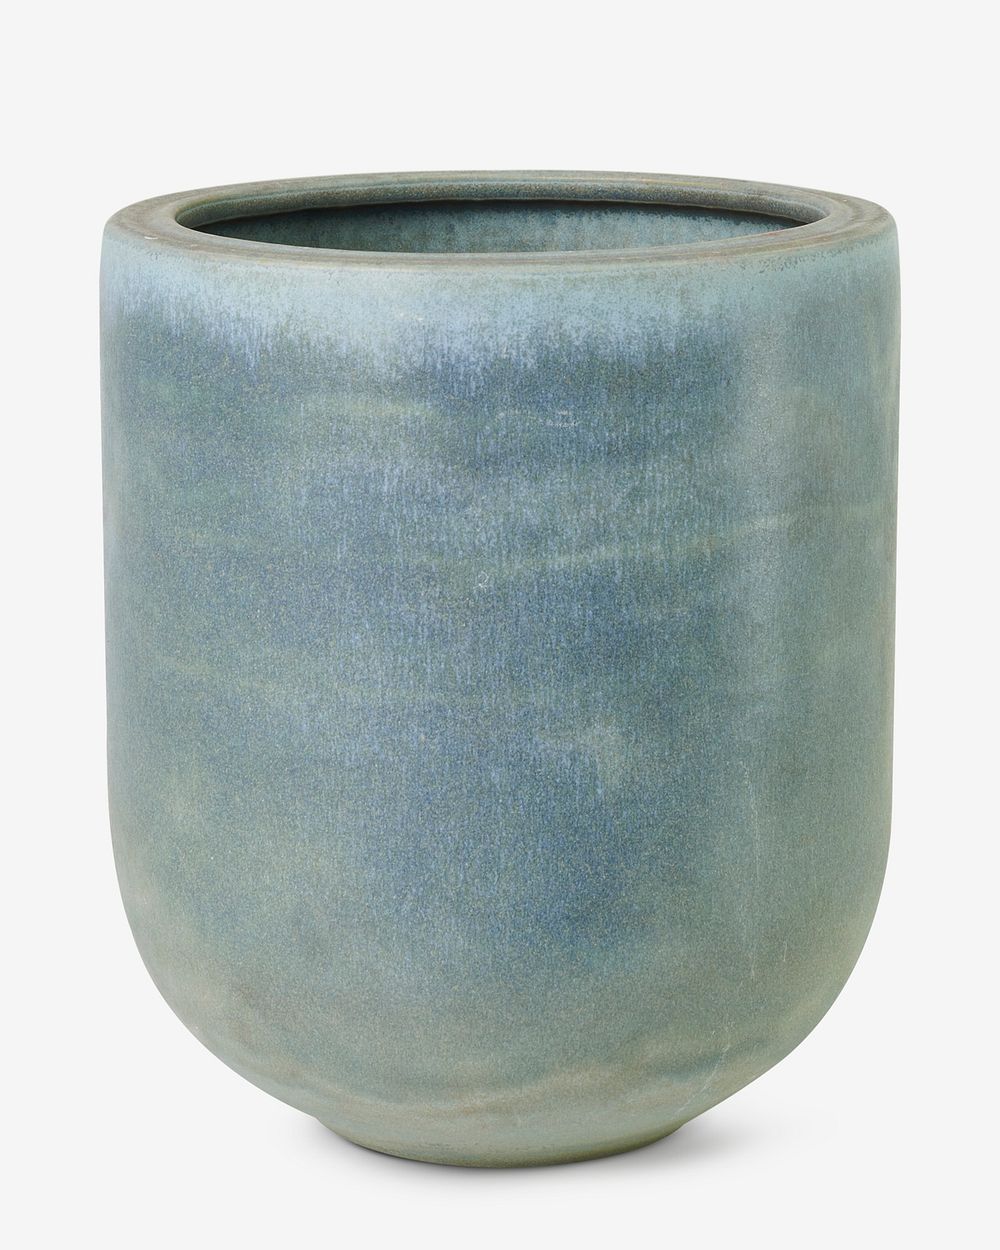 Ceramic plant pot mockup psd in blue tone